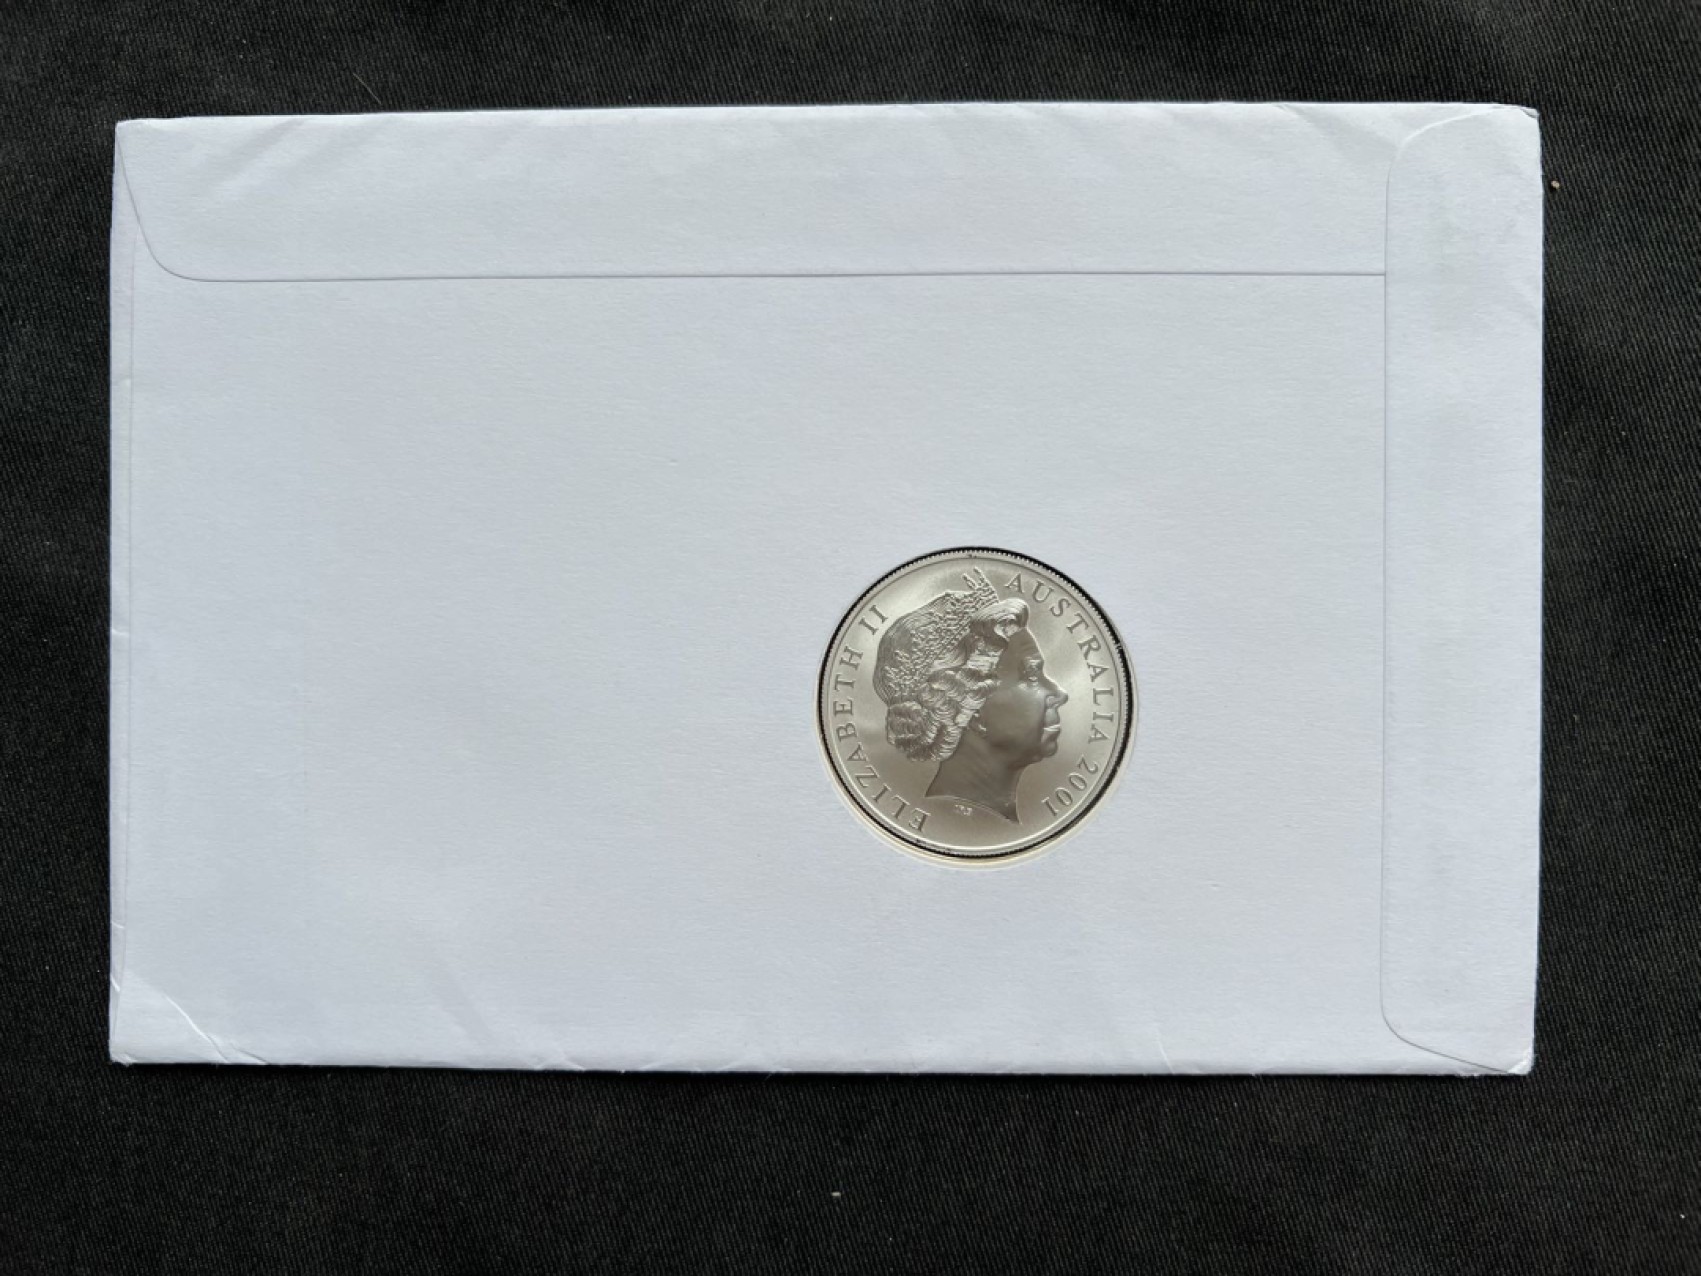 【钱币赏析】【奥地利亚】2001年袋鼠邮币封